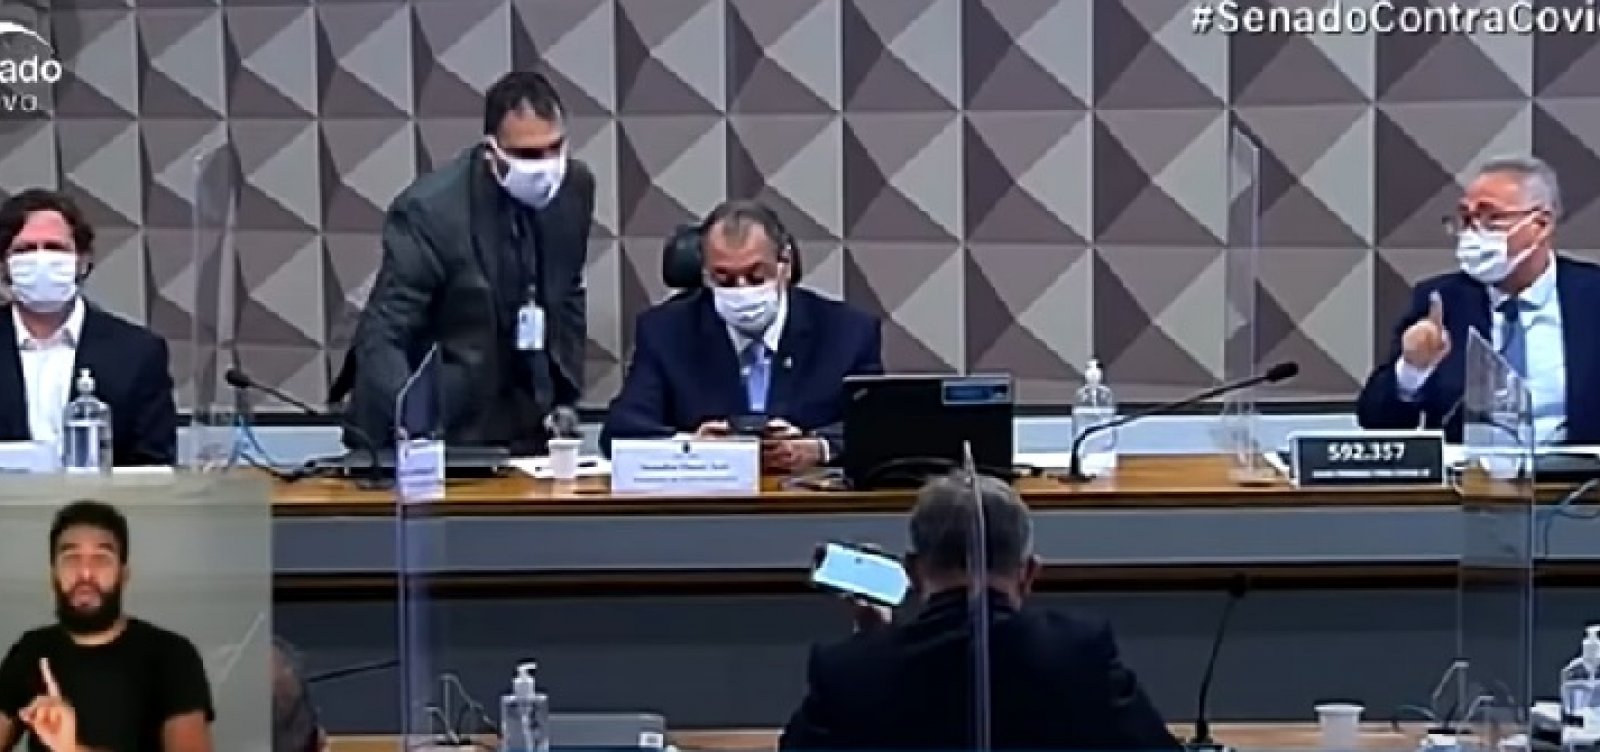 "Vagabundo", "ladrão", "picareta”: senadores trocam farpas durante CPI; veja vídeo